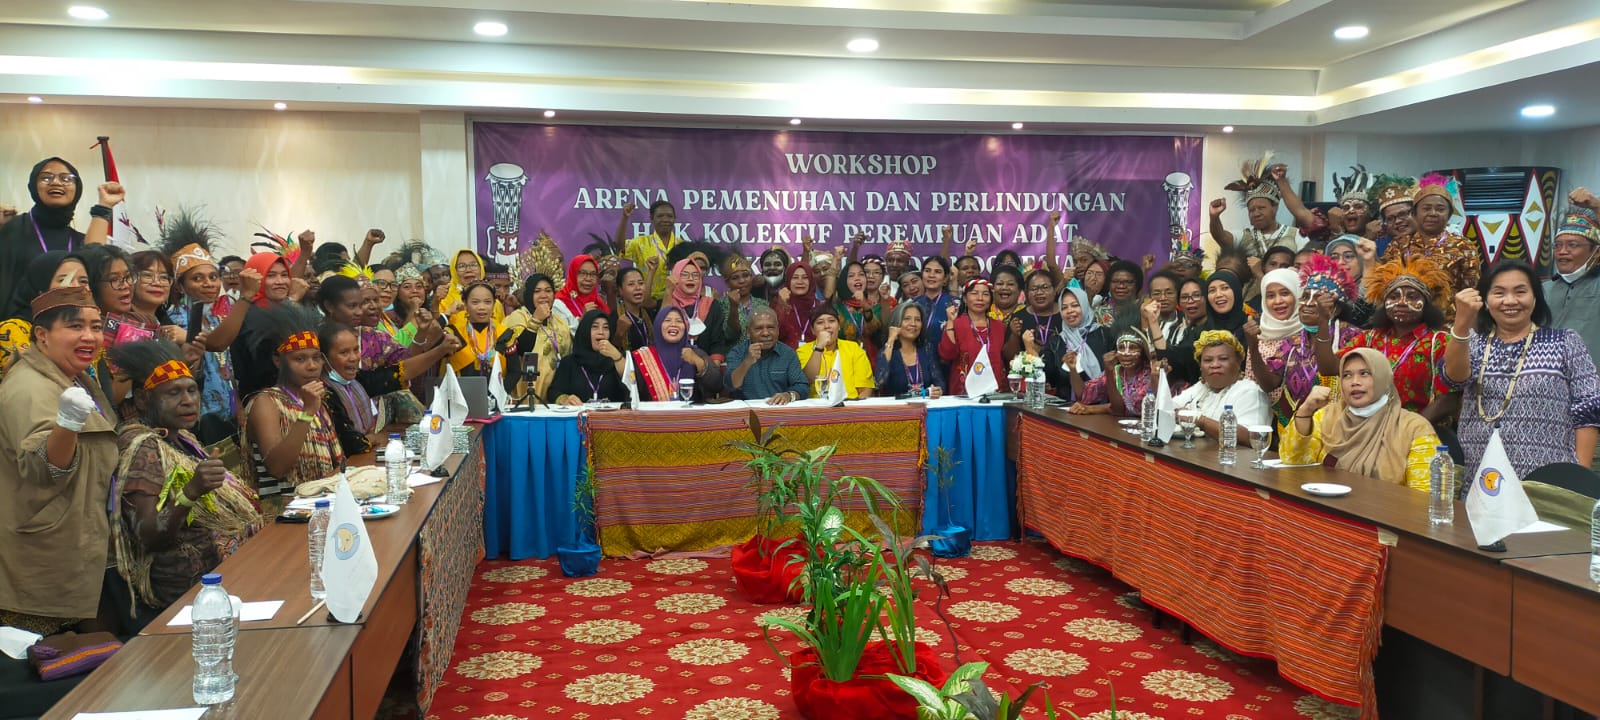 Workshop Perempuan AMAN bertempat di Horex Hotel, Kamis (20/10) Kemarin